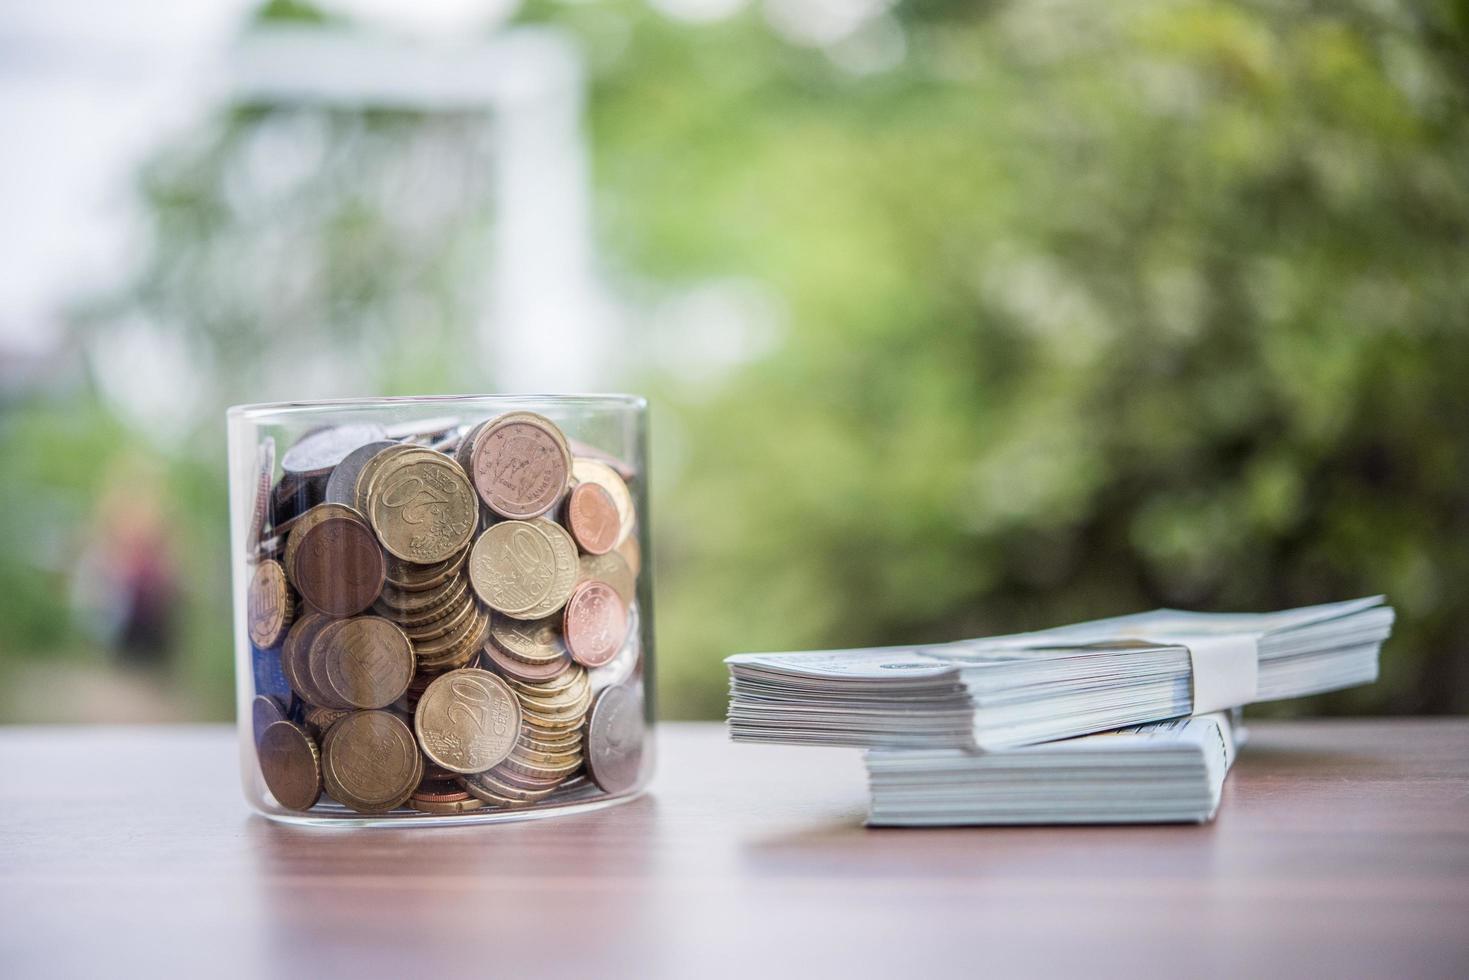 risparmiare denaro per il concetto di investimento moneta nel barattolo di vetro foto